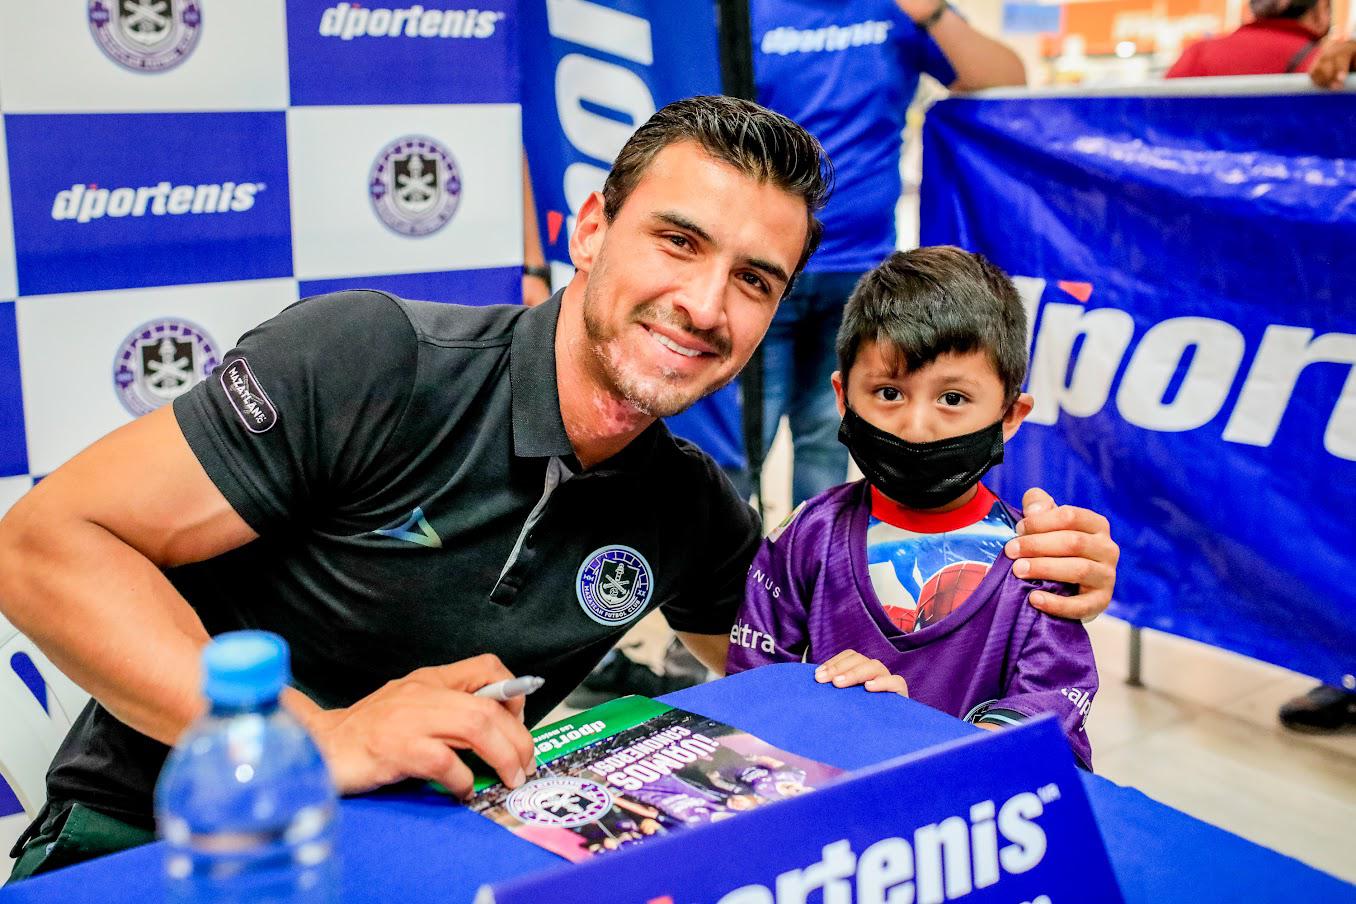 $!Mazatlán FC y D’portenis realizan firma de autógrafos y convivencia con aficionados